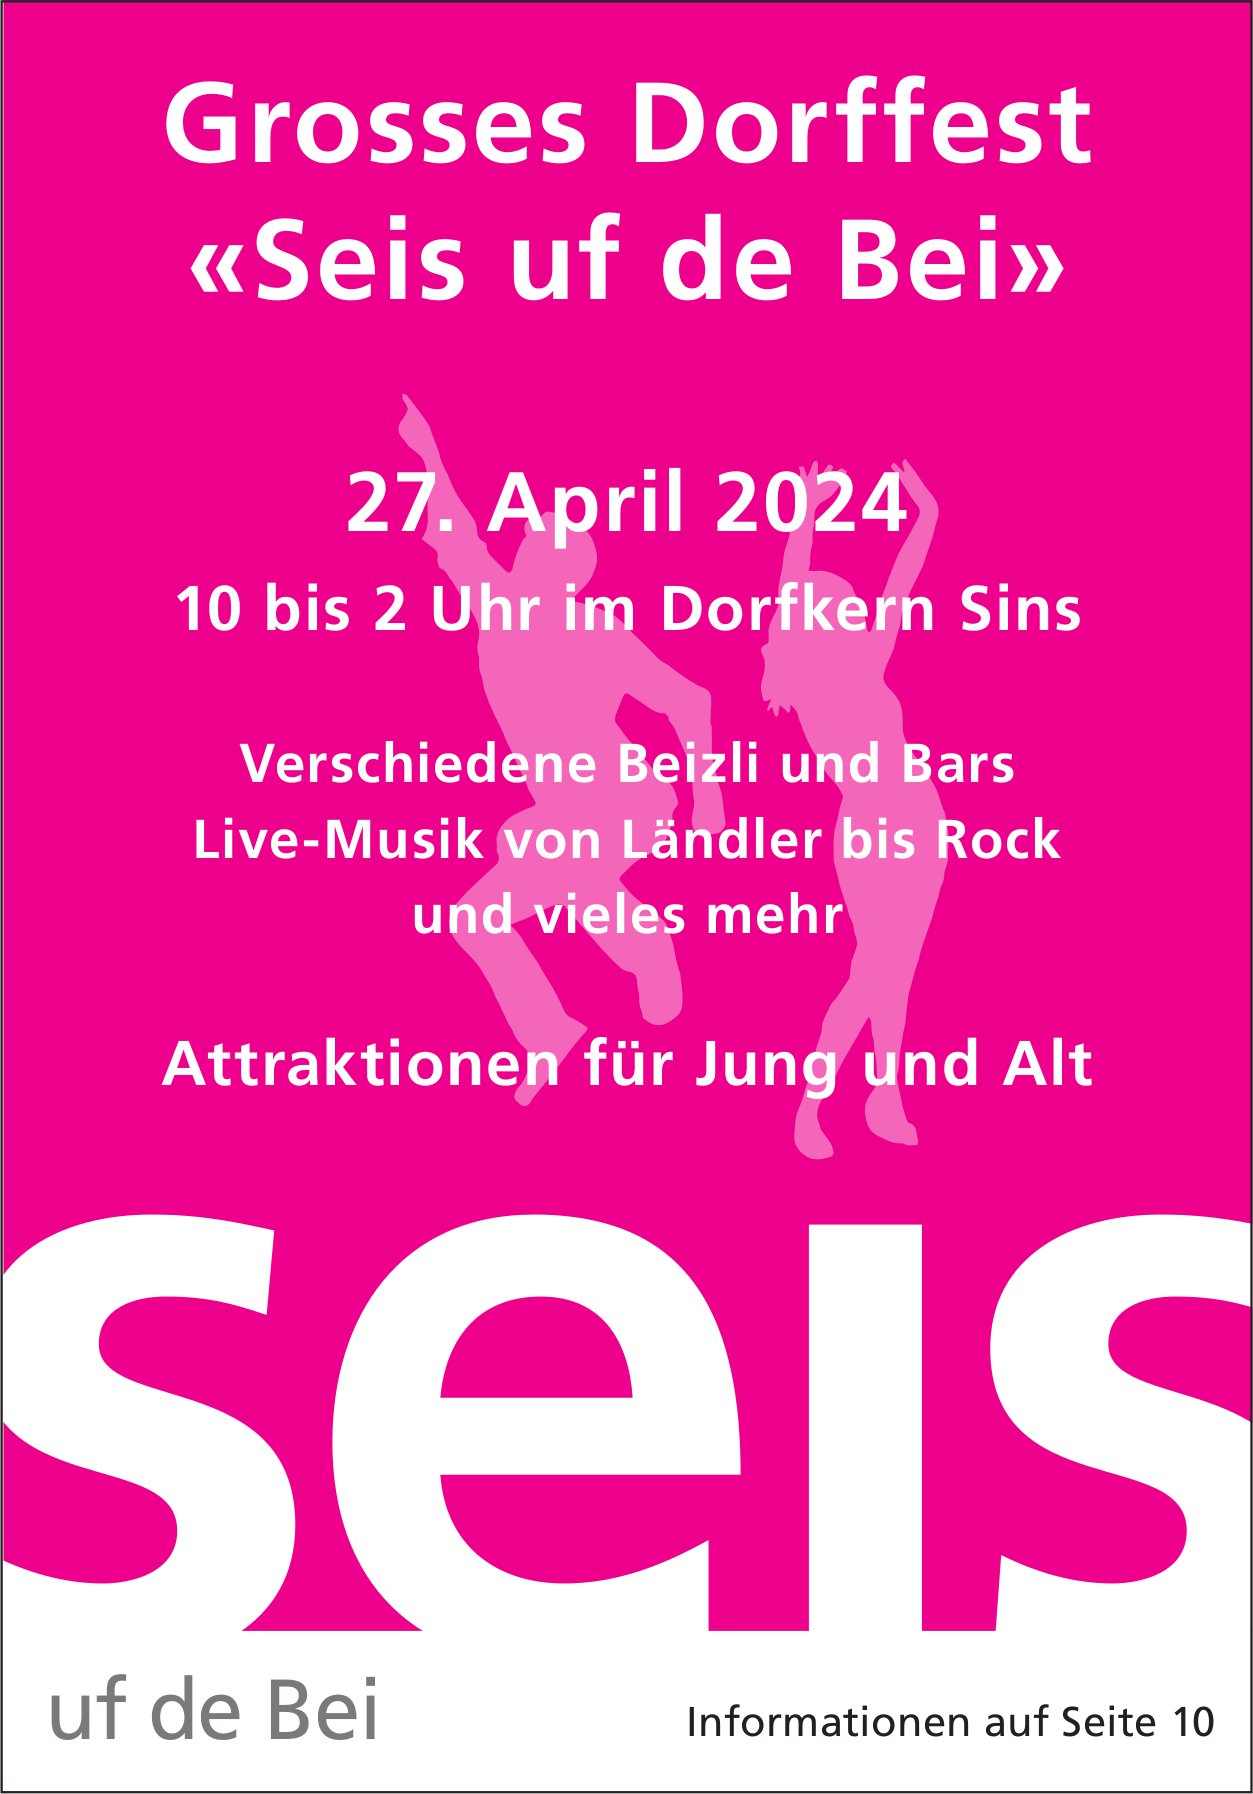 Dorffest «Seis uf de Bei», 27. April, Dorfkern, Sins